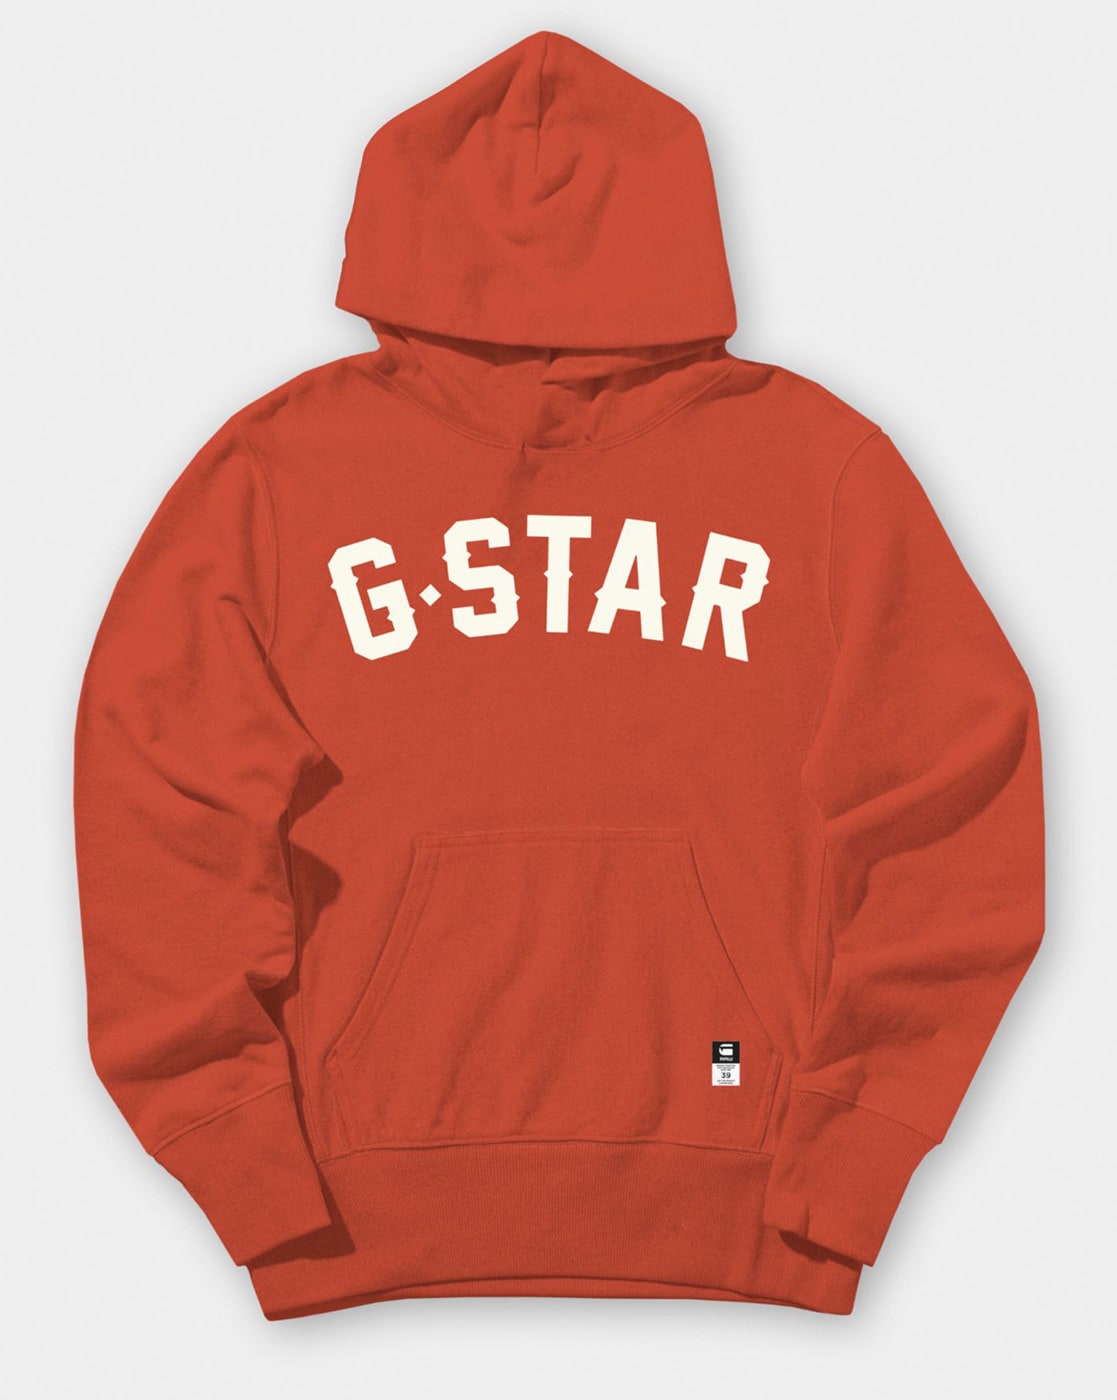 g star hoodie red